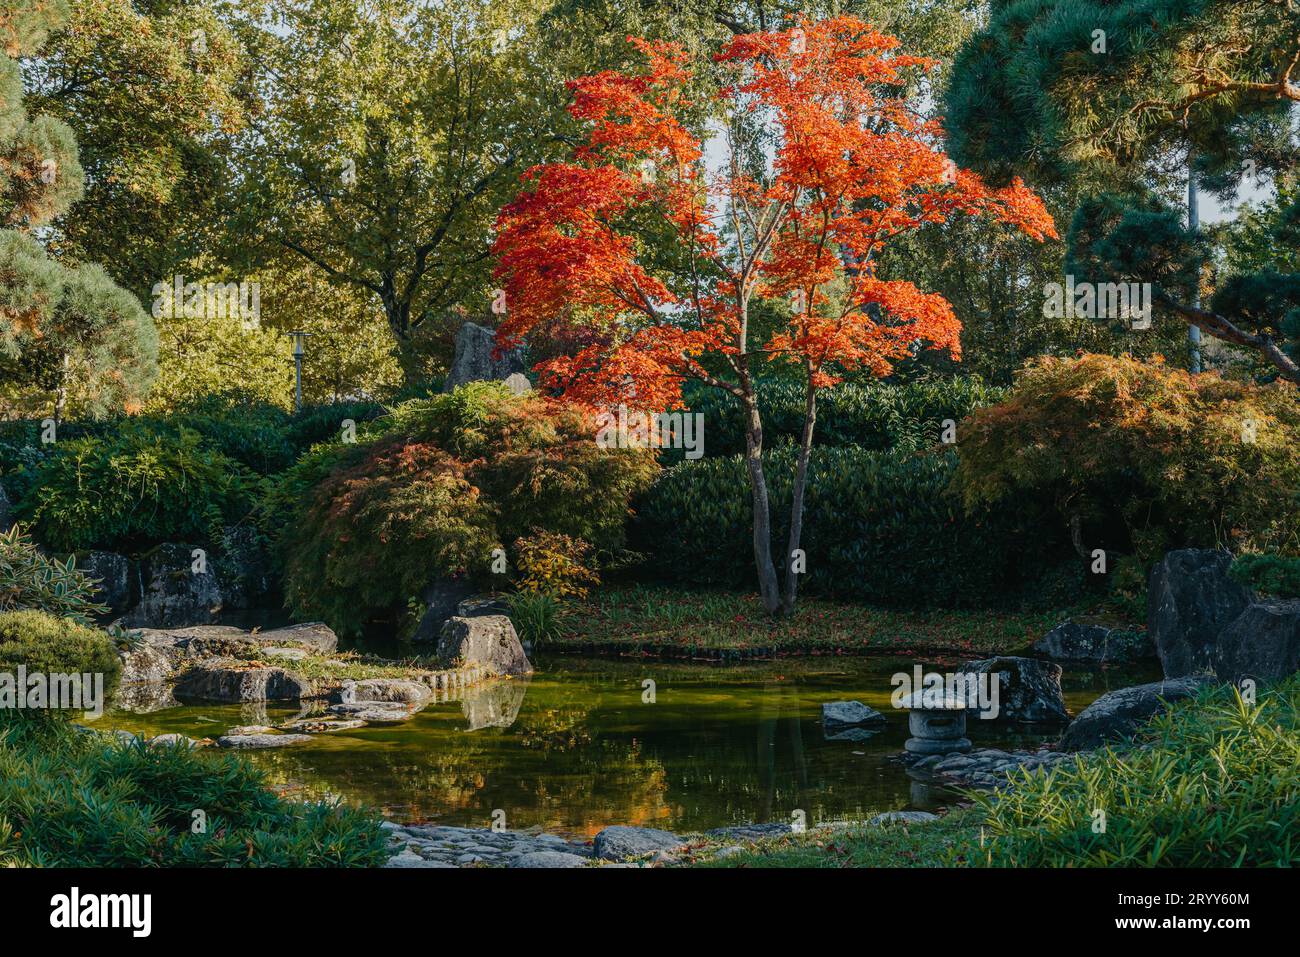 Bella e tranquilla scena nel giardino giapponese primaverile. Immagine autunnale del Giappone. Bellissimo giardino giapponese con stagno e foglie rosse. Stagno i Foto Stock